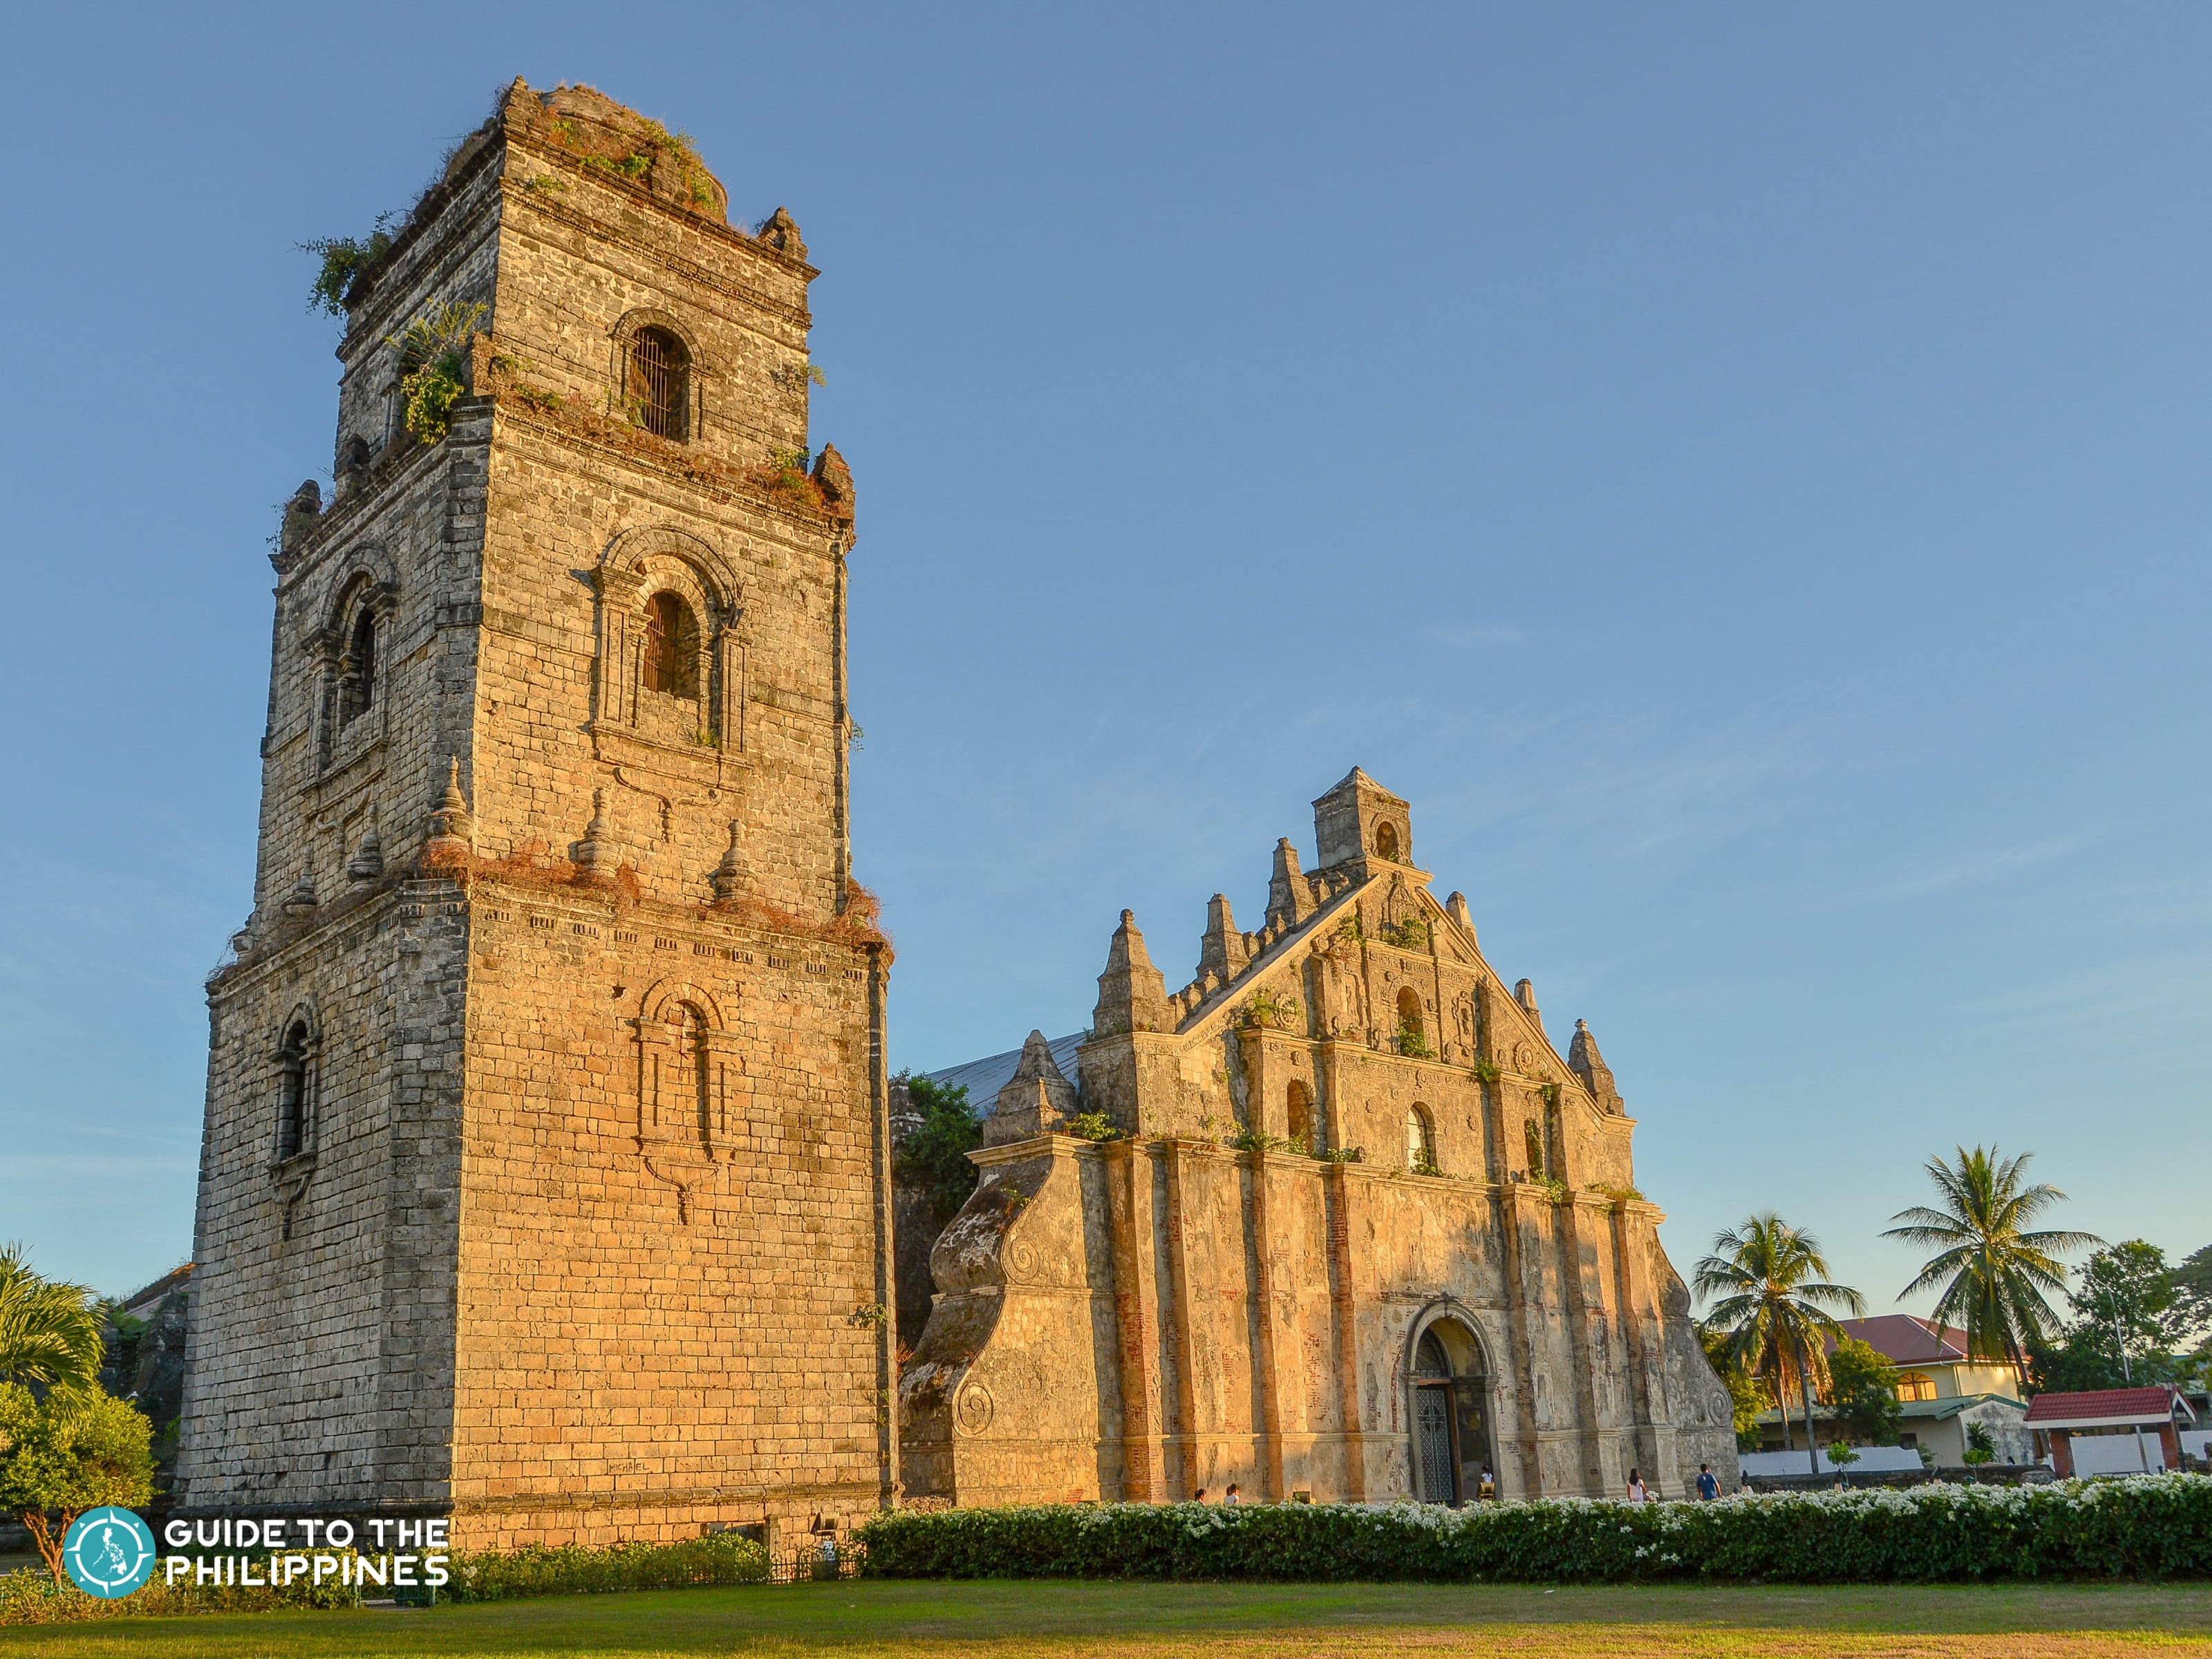 Facade of the Paoay Church in Laoag